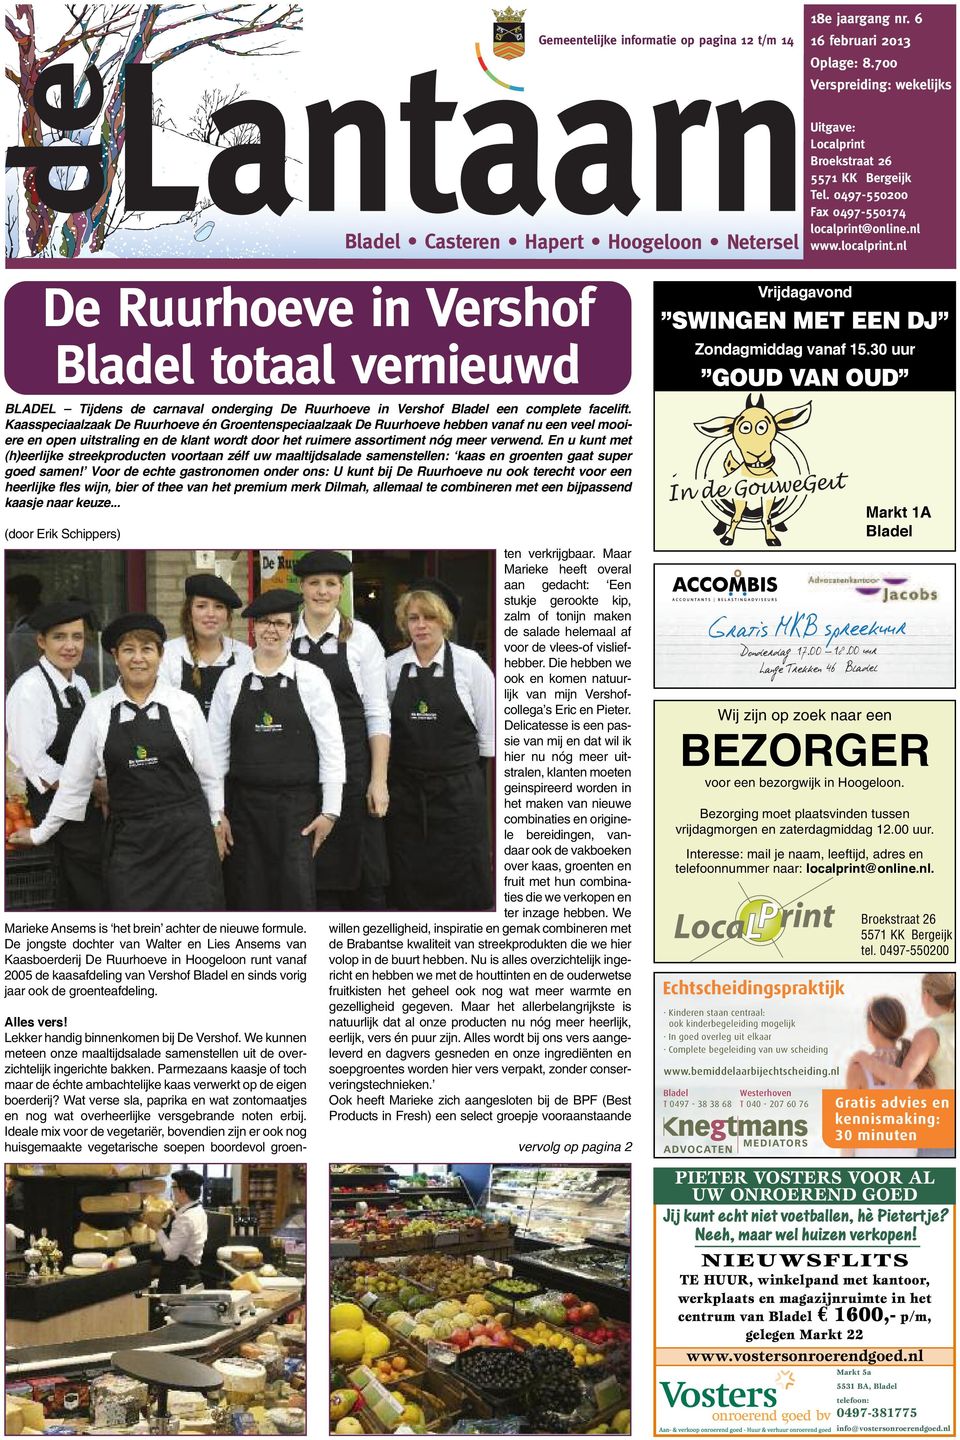 online.nl www.localprint.nl De Ruurhoeve in Vershof totaal vernieuwd BLADEL Tijdens de carnaval onderging De Ruurhoeve in Vershof een complete facelift.